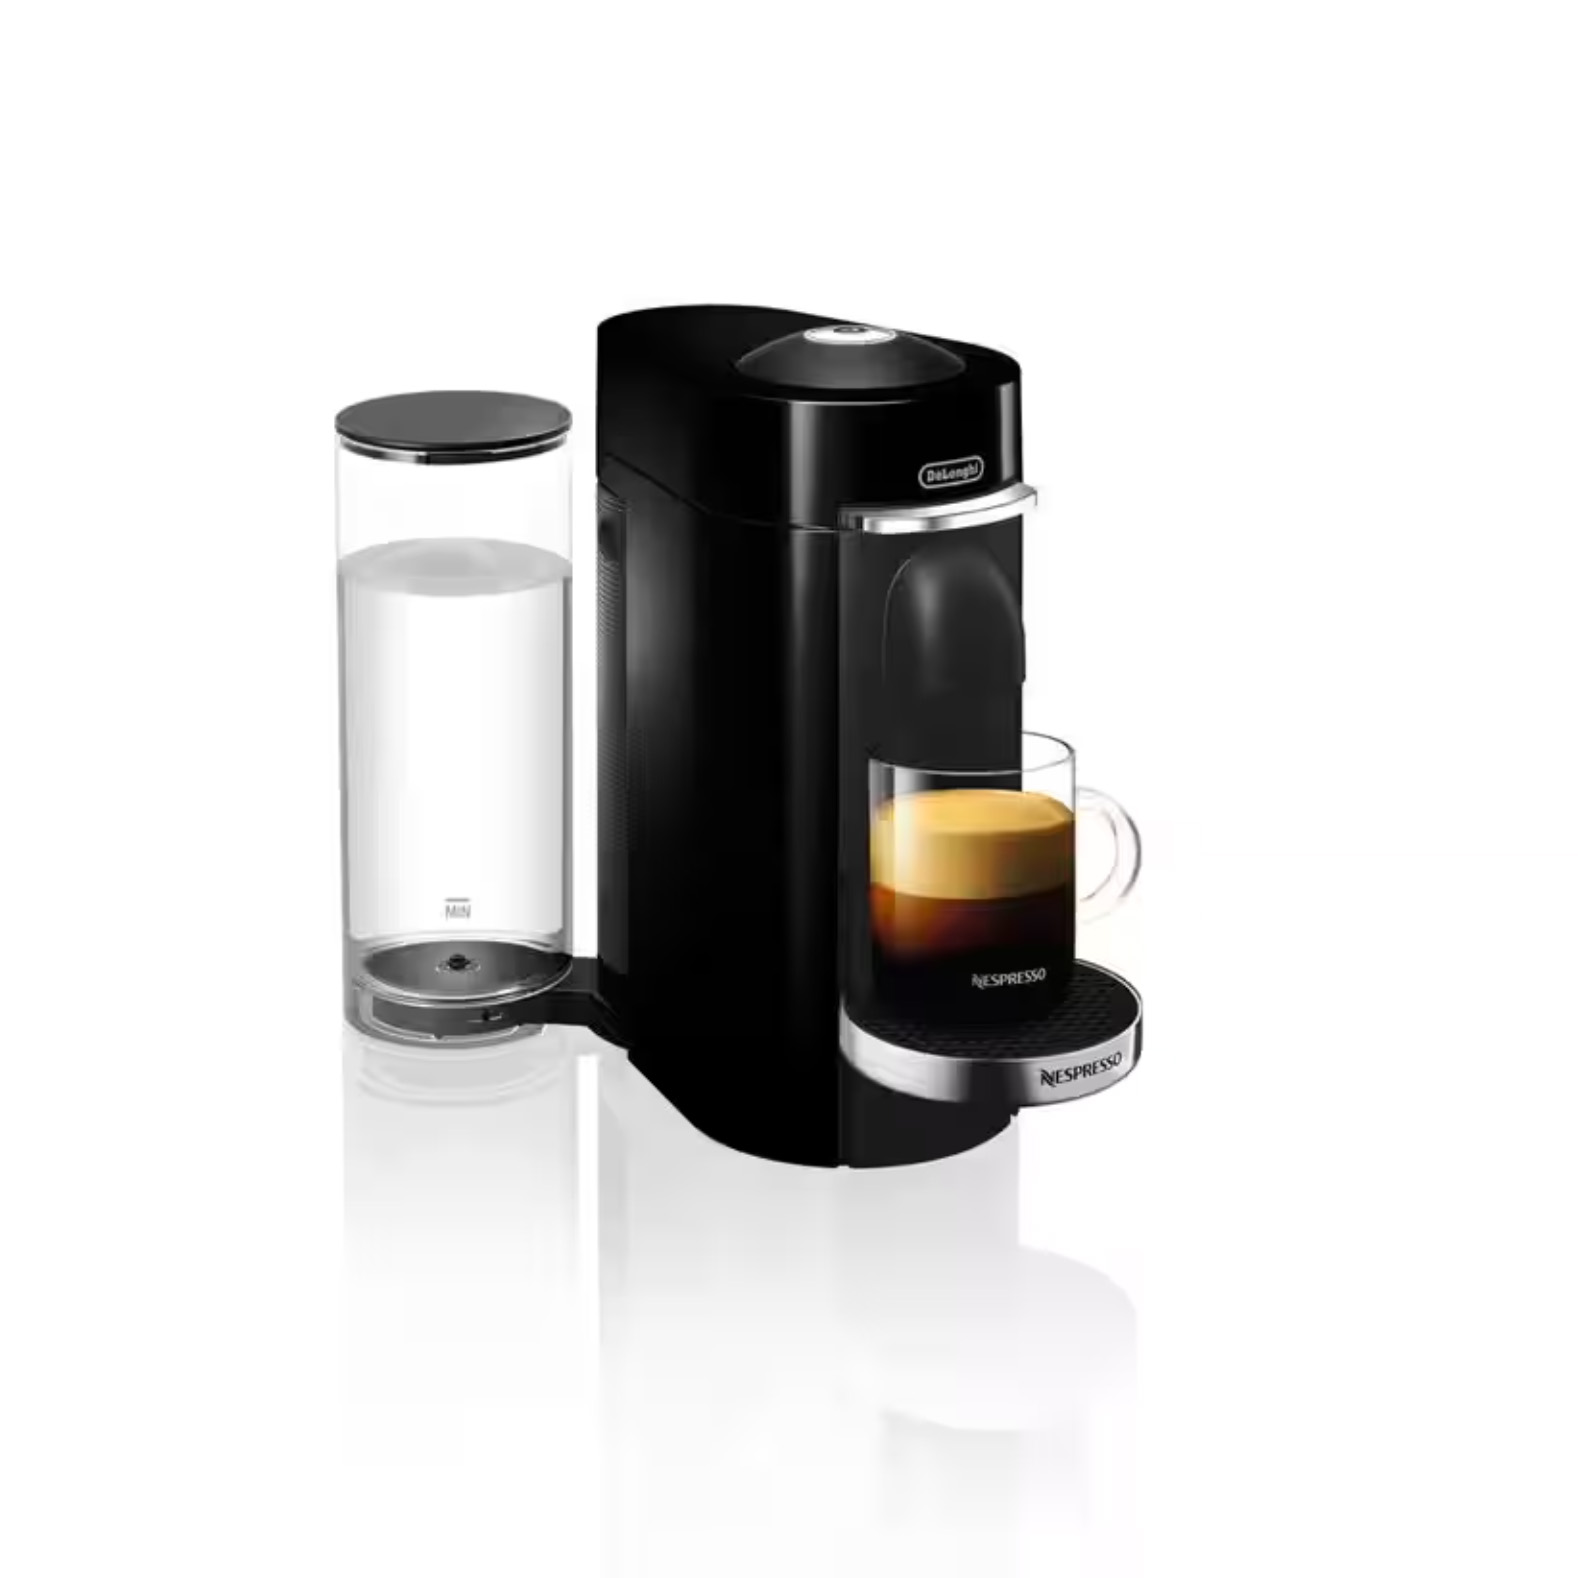 Nespresso VertuoPlus Deluxe in black and white 